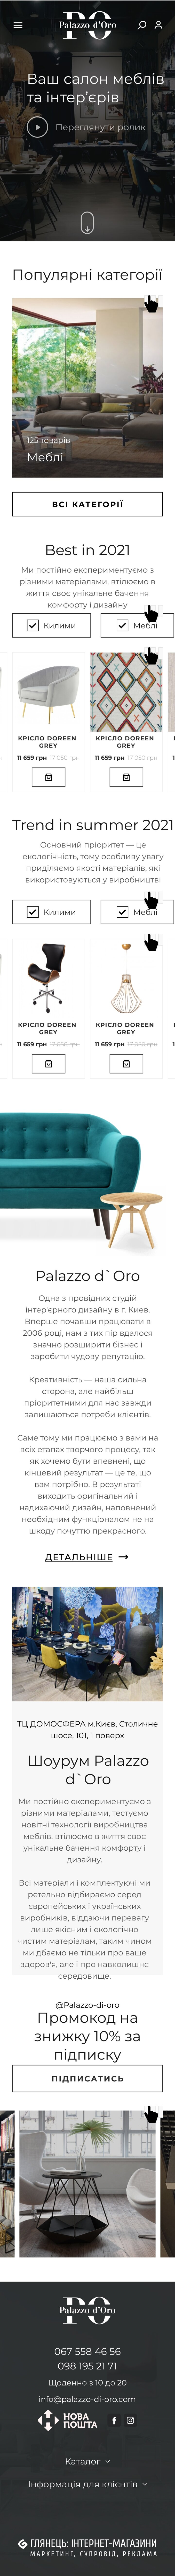 ™ Глянець, студія веб-дизайну — Інтернет-магазин Palazzo-di-oro_27